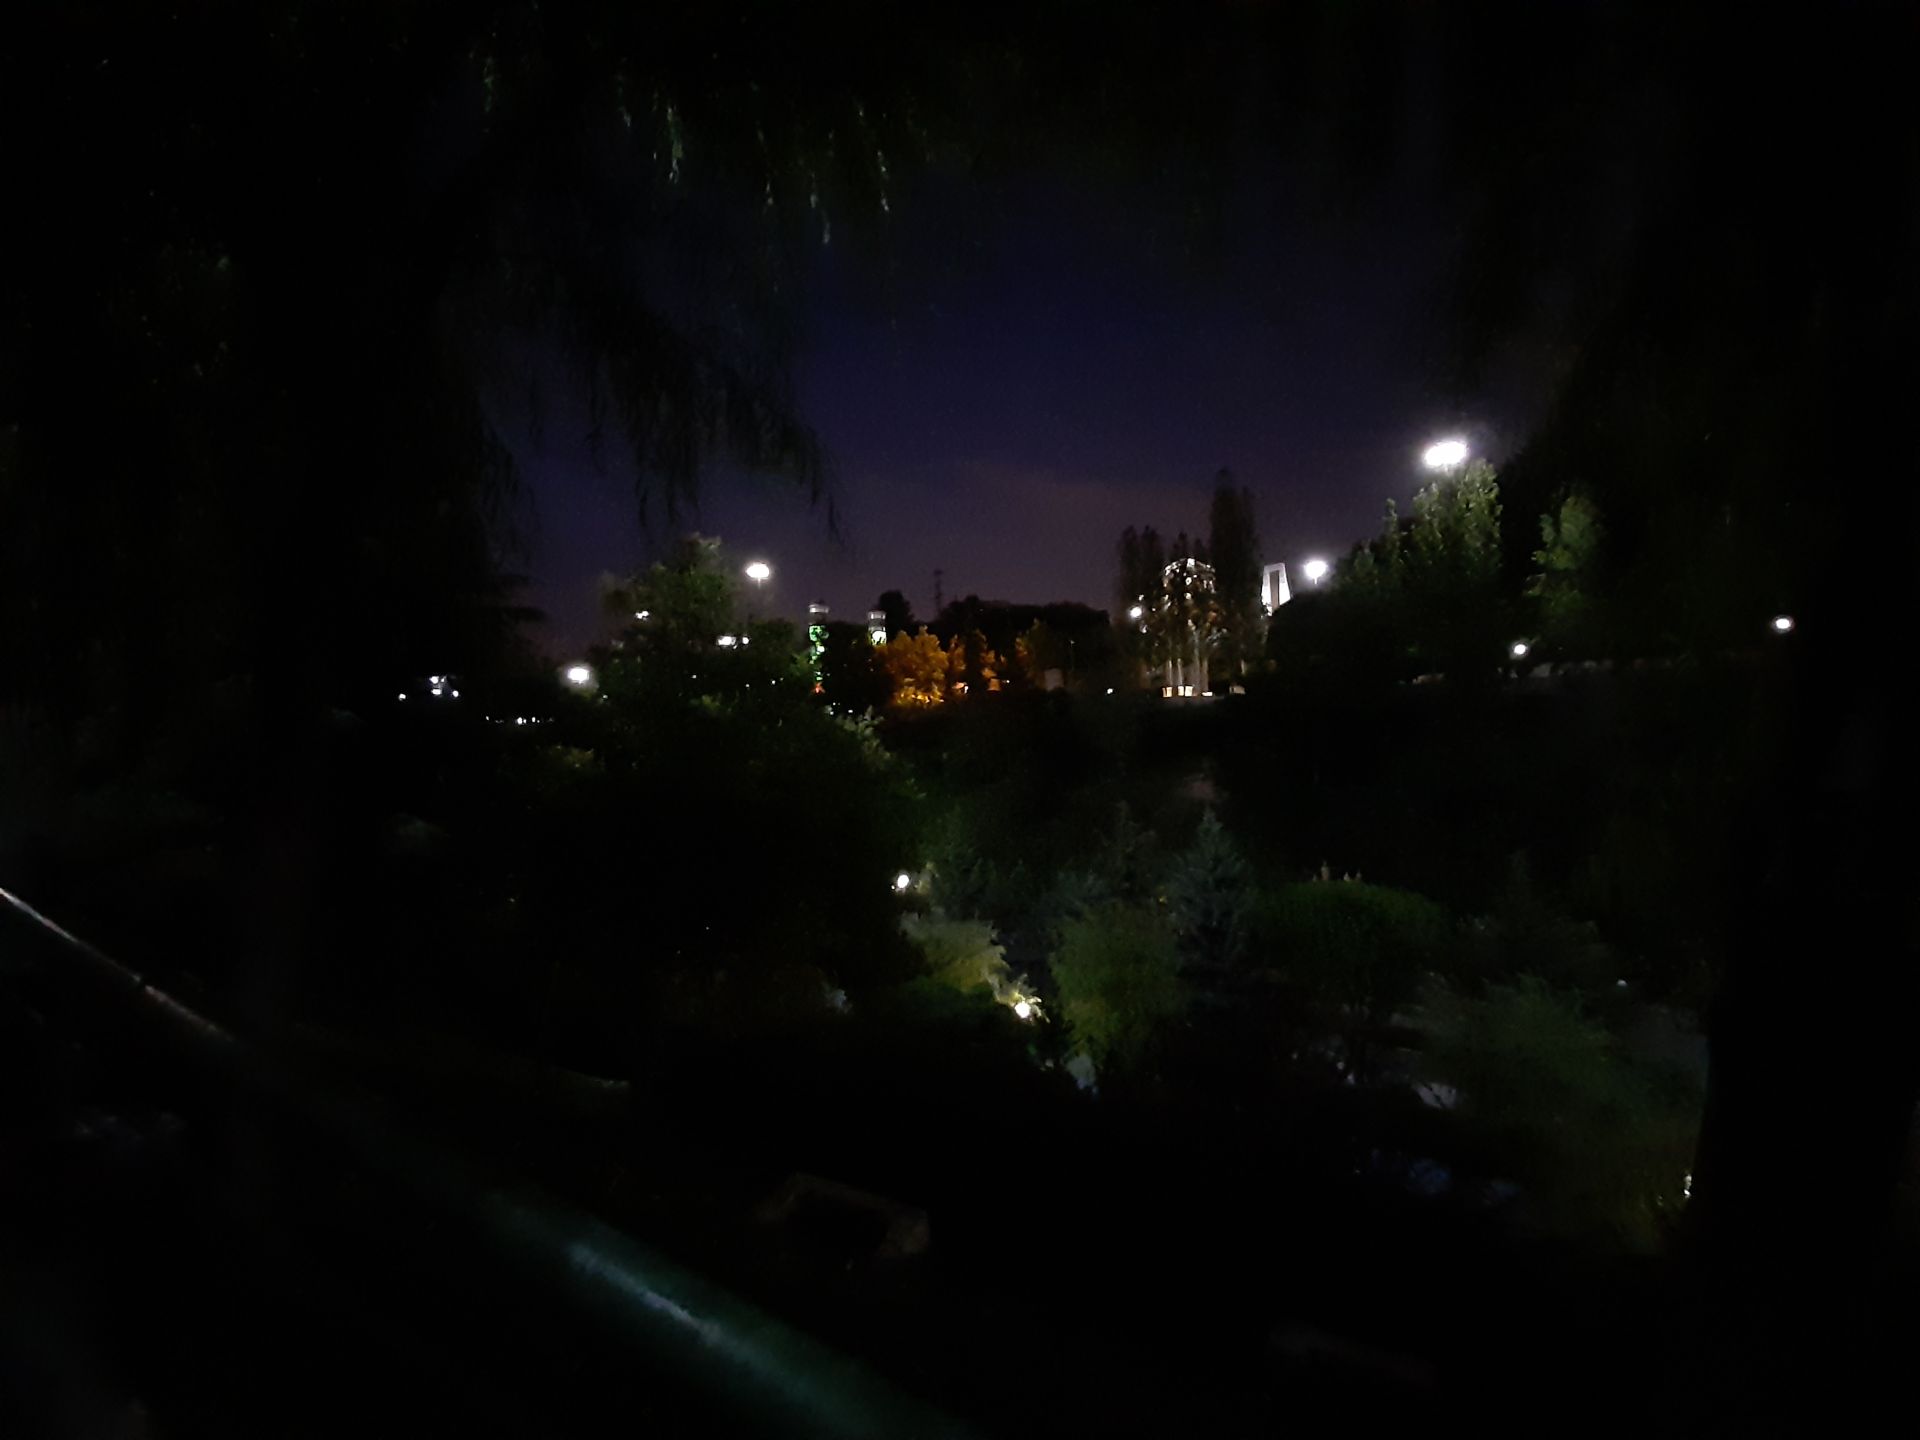 عکس گرفته شده با دوربین اولتراواید در شب